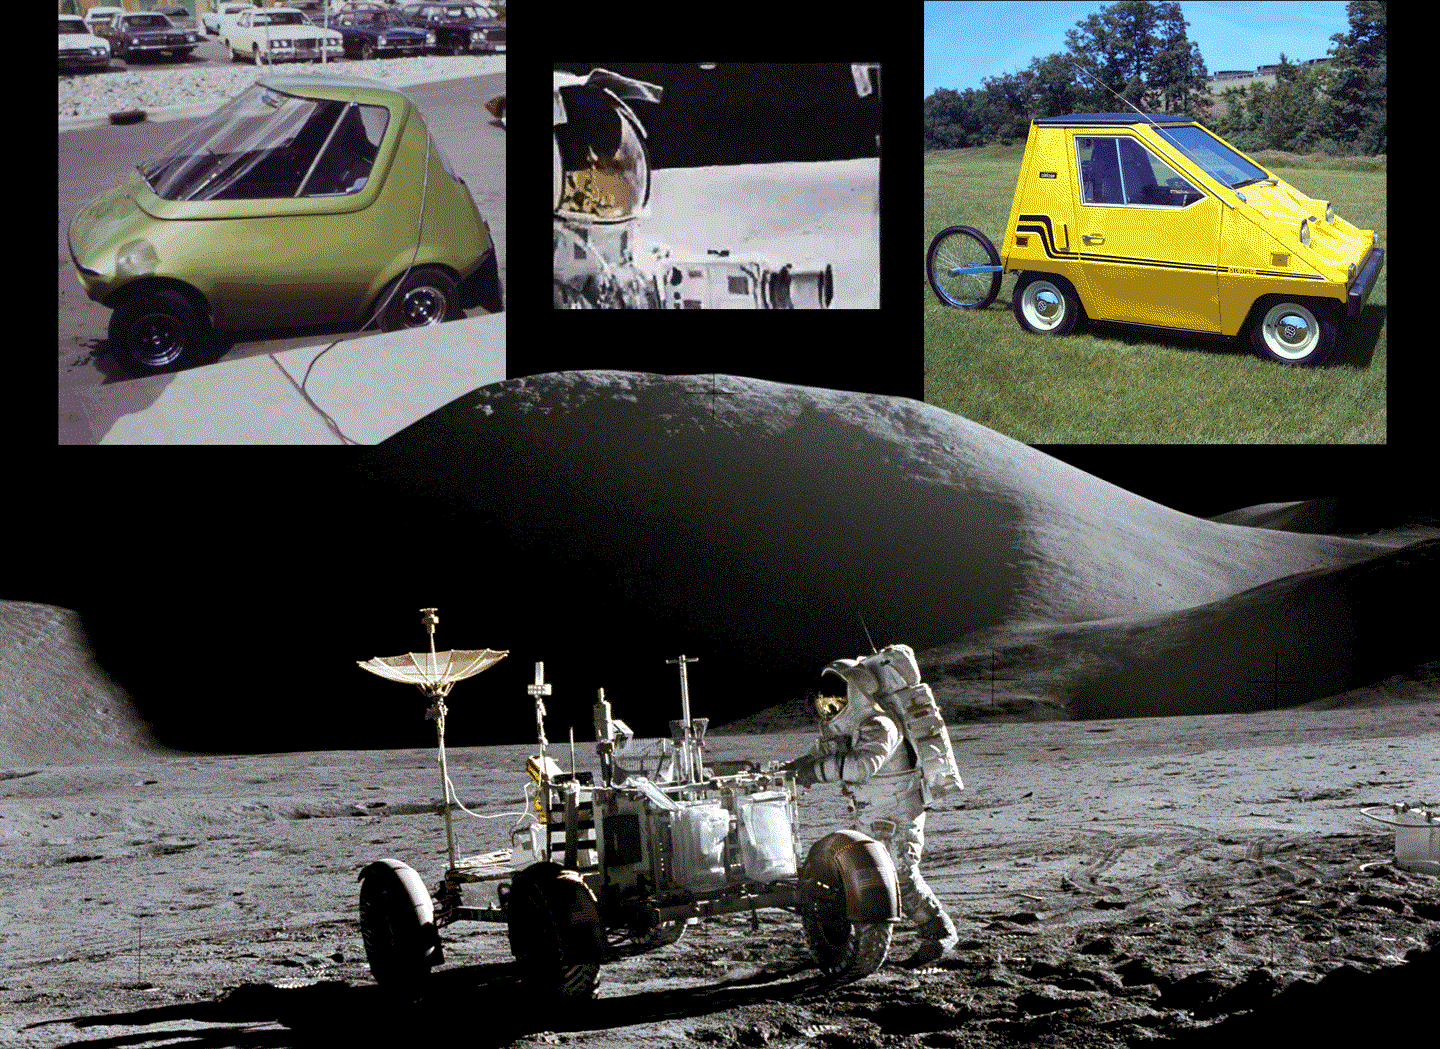 Nguyên mẫu xe chạy trong đô thị của GM năm 1973(trên cùng bên trái). Một đoạn phim ghi lại cảnh Lunar Roving Vehicle di chuyển trên mặt trăng (trên cùng ở giữa). Mẫu CitiCar của NASA năm 1976 (trên cùng bên phải). Phi hành gia James B. Irwin và chiếc xe trên mặt trăng năm 1971(dưới cùng).